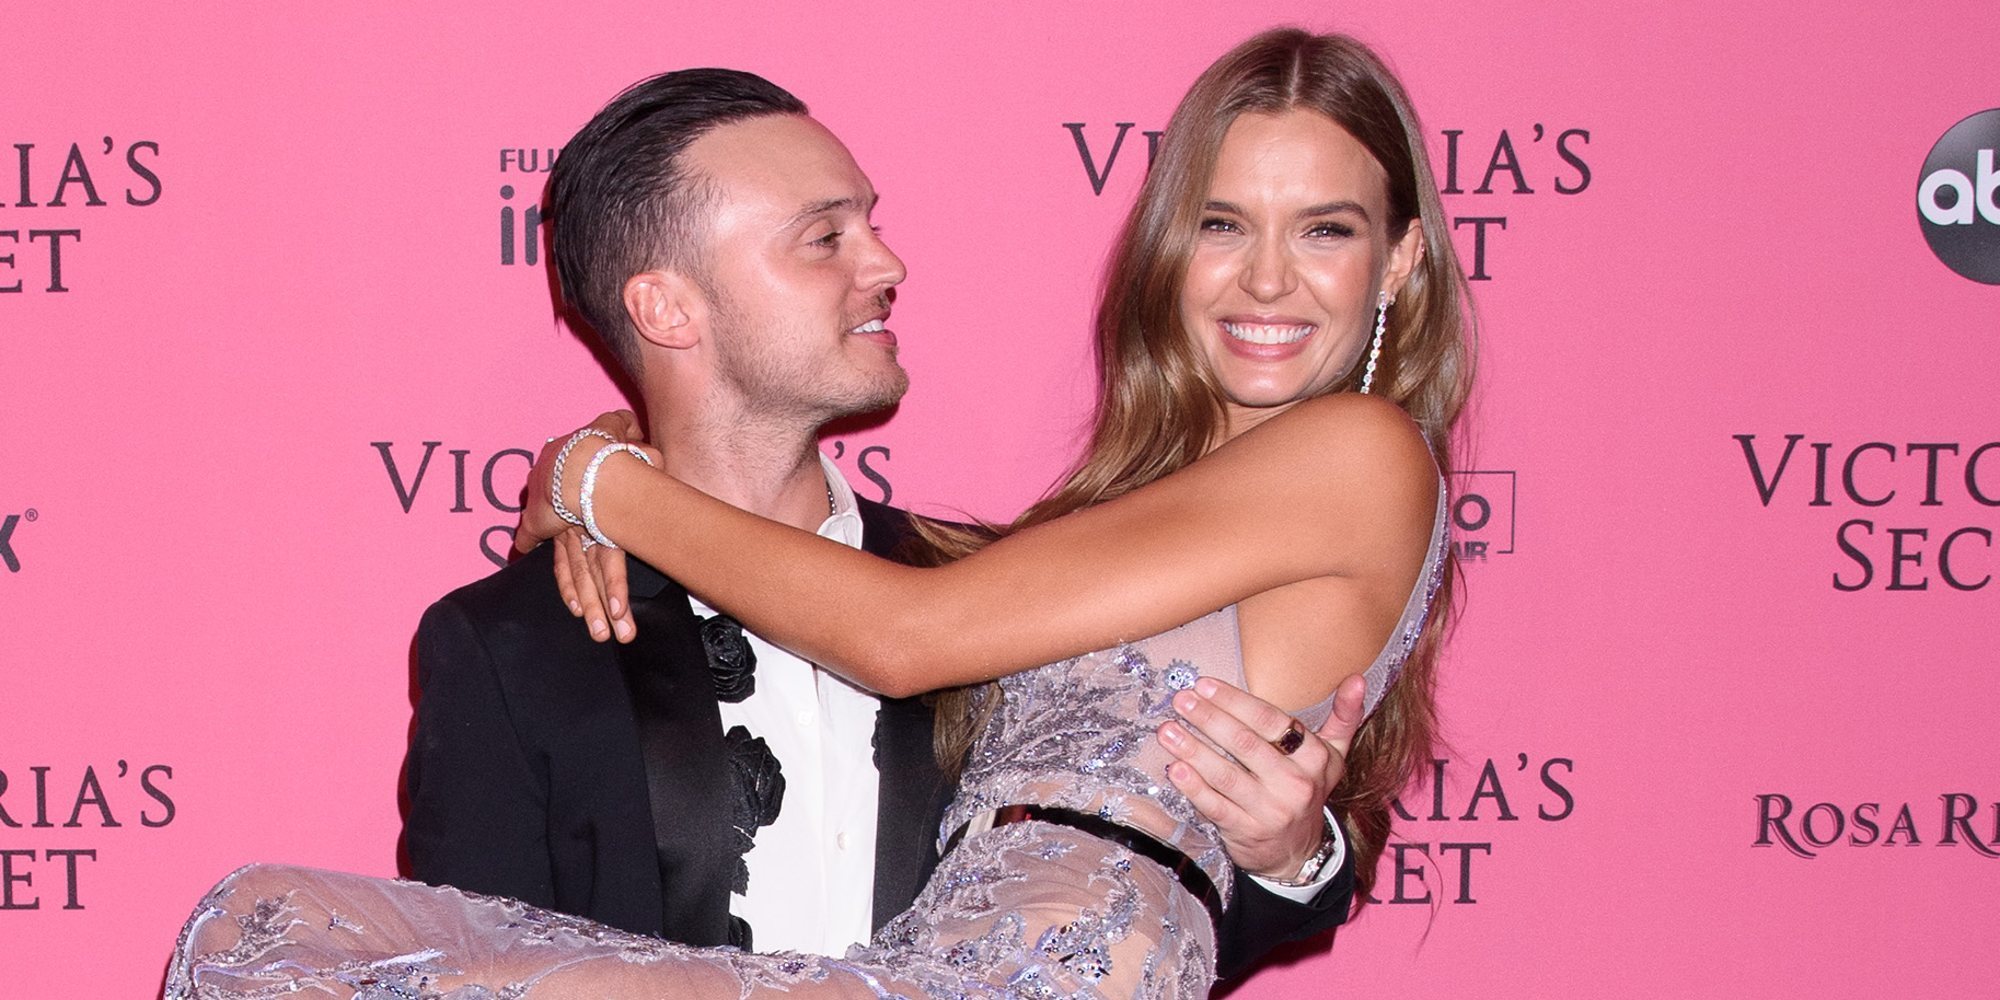 El ángel de Victoria's Secret Josephine Skriver se ha comprometido con el cantante Alexander DeLeon